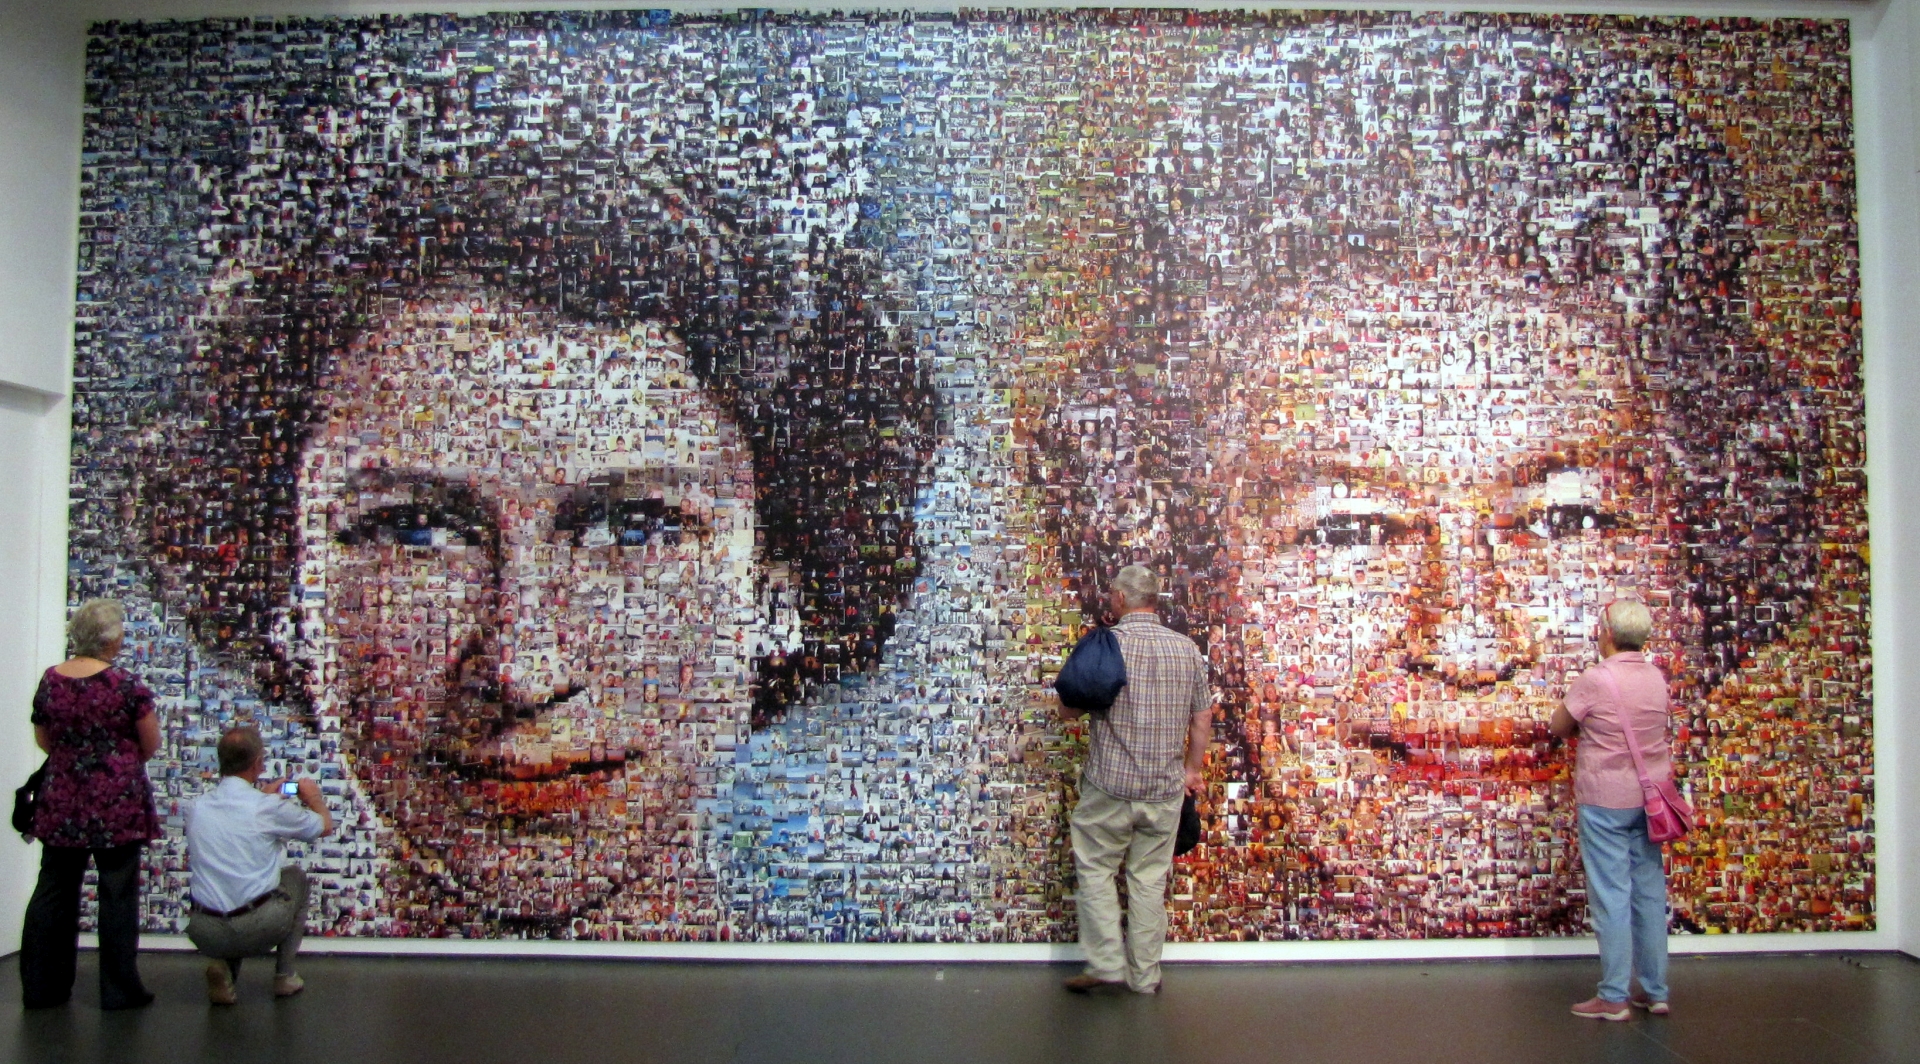 Mozaik a dél-angliai Eastbourne-ben, amelyet több mint 5000 képből állítottak össze a királynő gyémántjubileumára. Forrás: Wikipédia/Abuk Sabuk